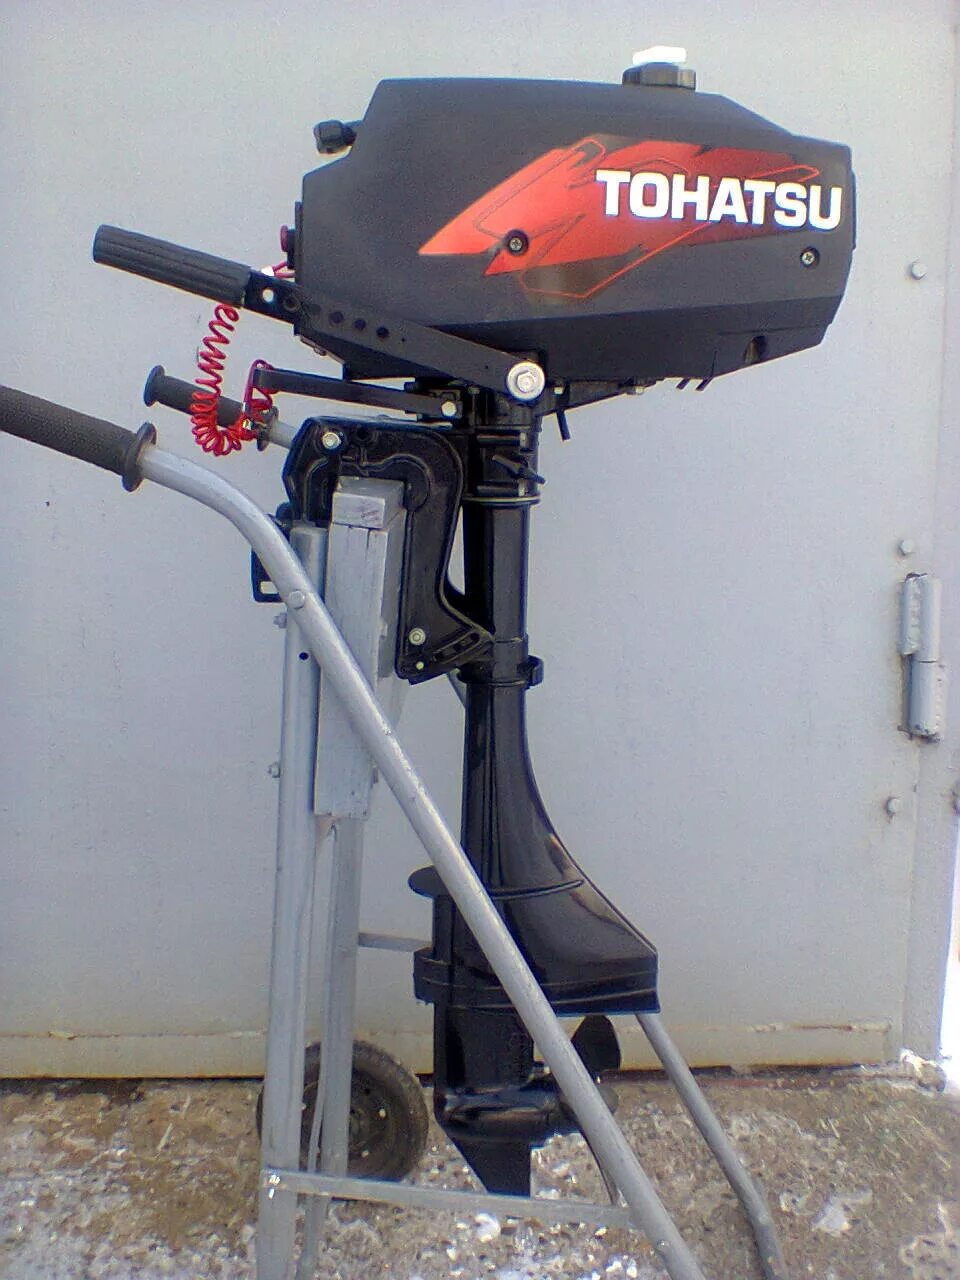 Лодочный мотор Tohatsu m 3.5b2 s. Лодочный мотор Тохатсу 3.5. Лодочный мотор Тохатсу 2.5. Лодочный мотор Tohatsu м 3.5 b2 s.